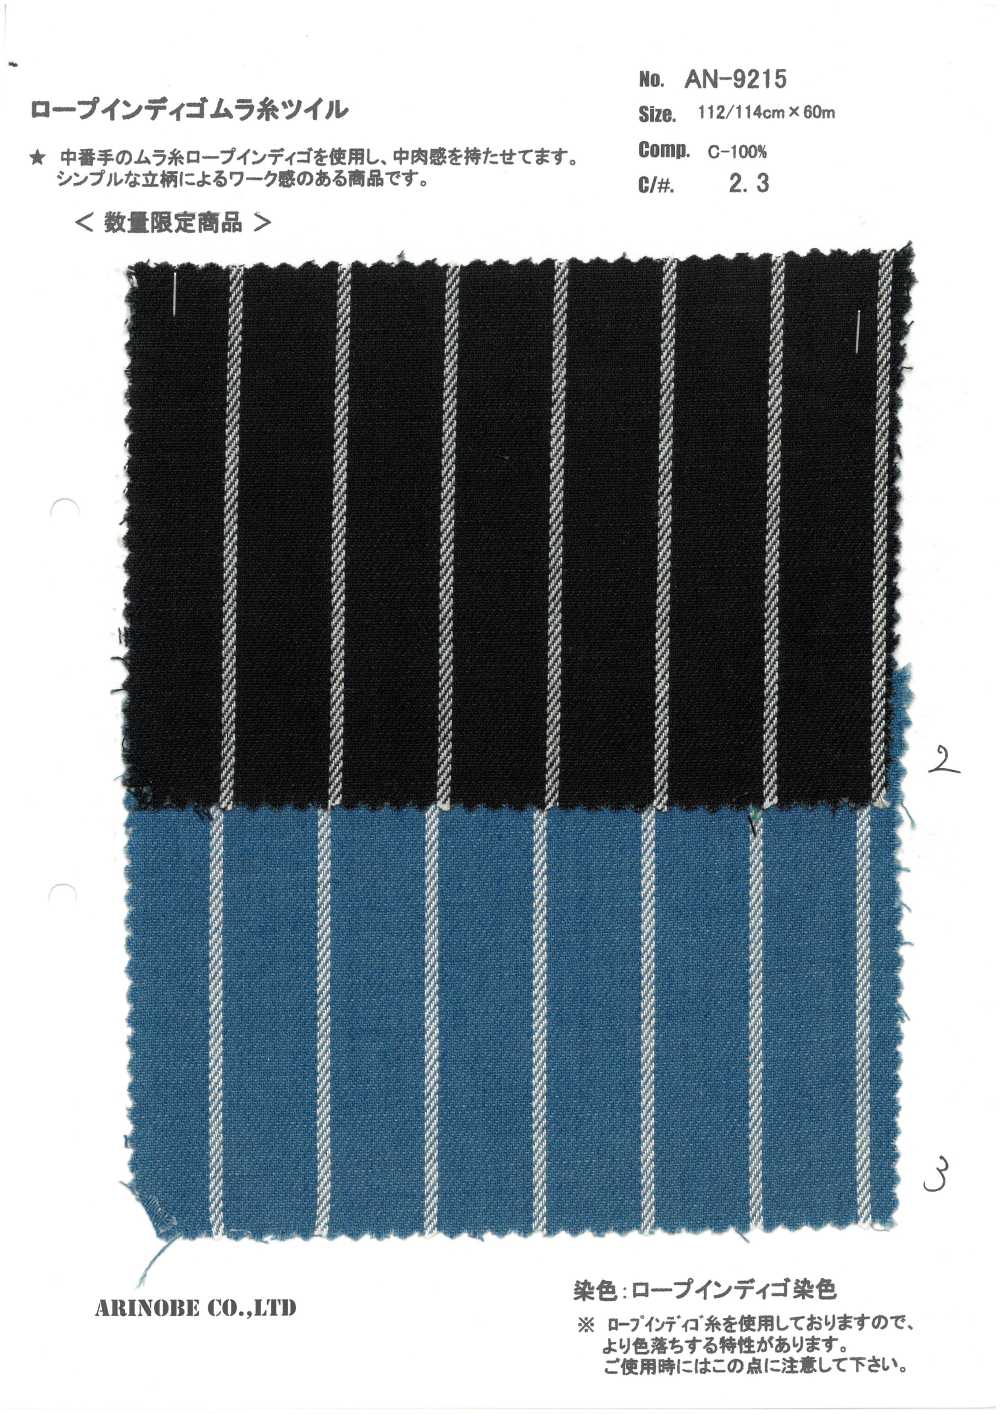 AN-9215 Rope Indigo Twill Mit Ungleichmäßigem Faden[Textilgewebe] ARINOBE CO., LTD.